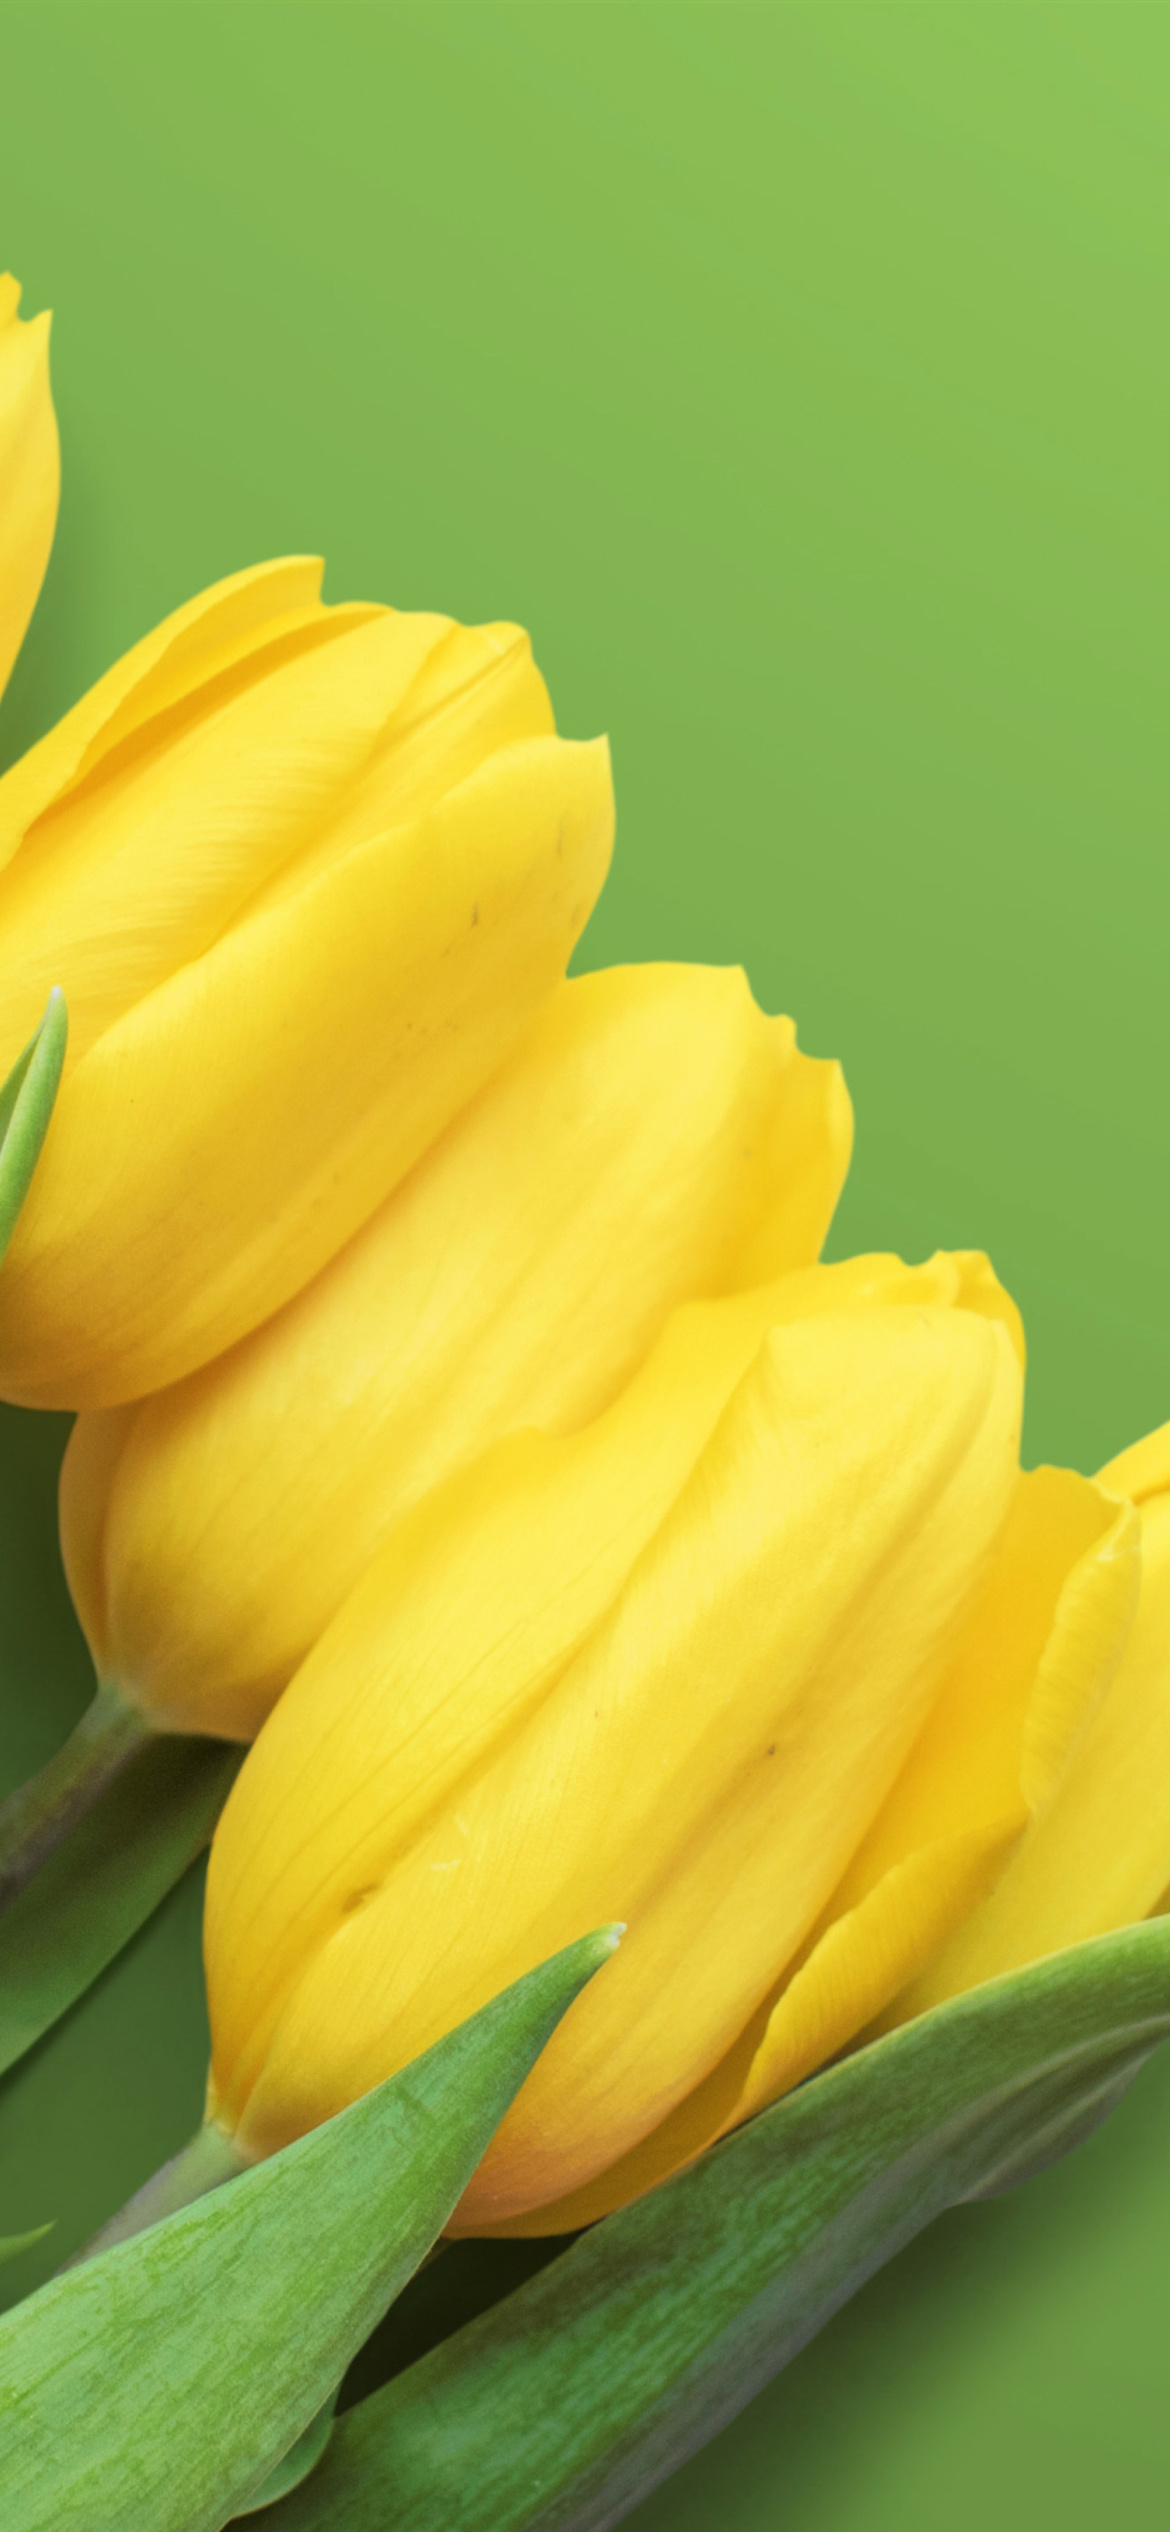 Yellow Tulips wallpaper 1170x2532